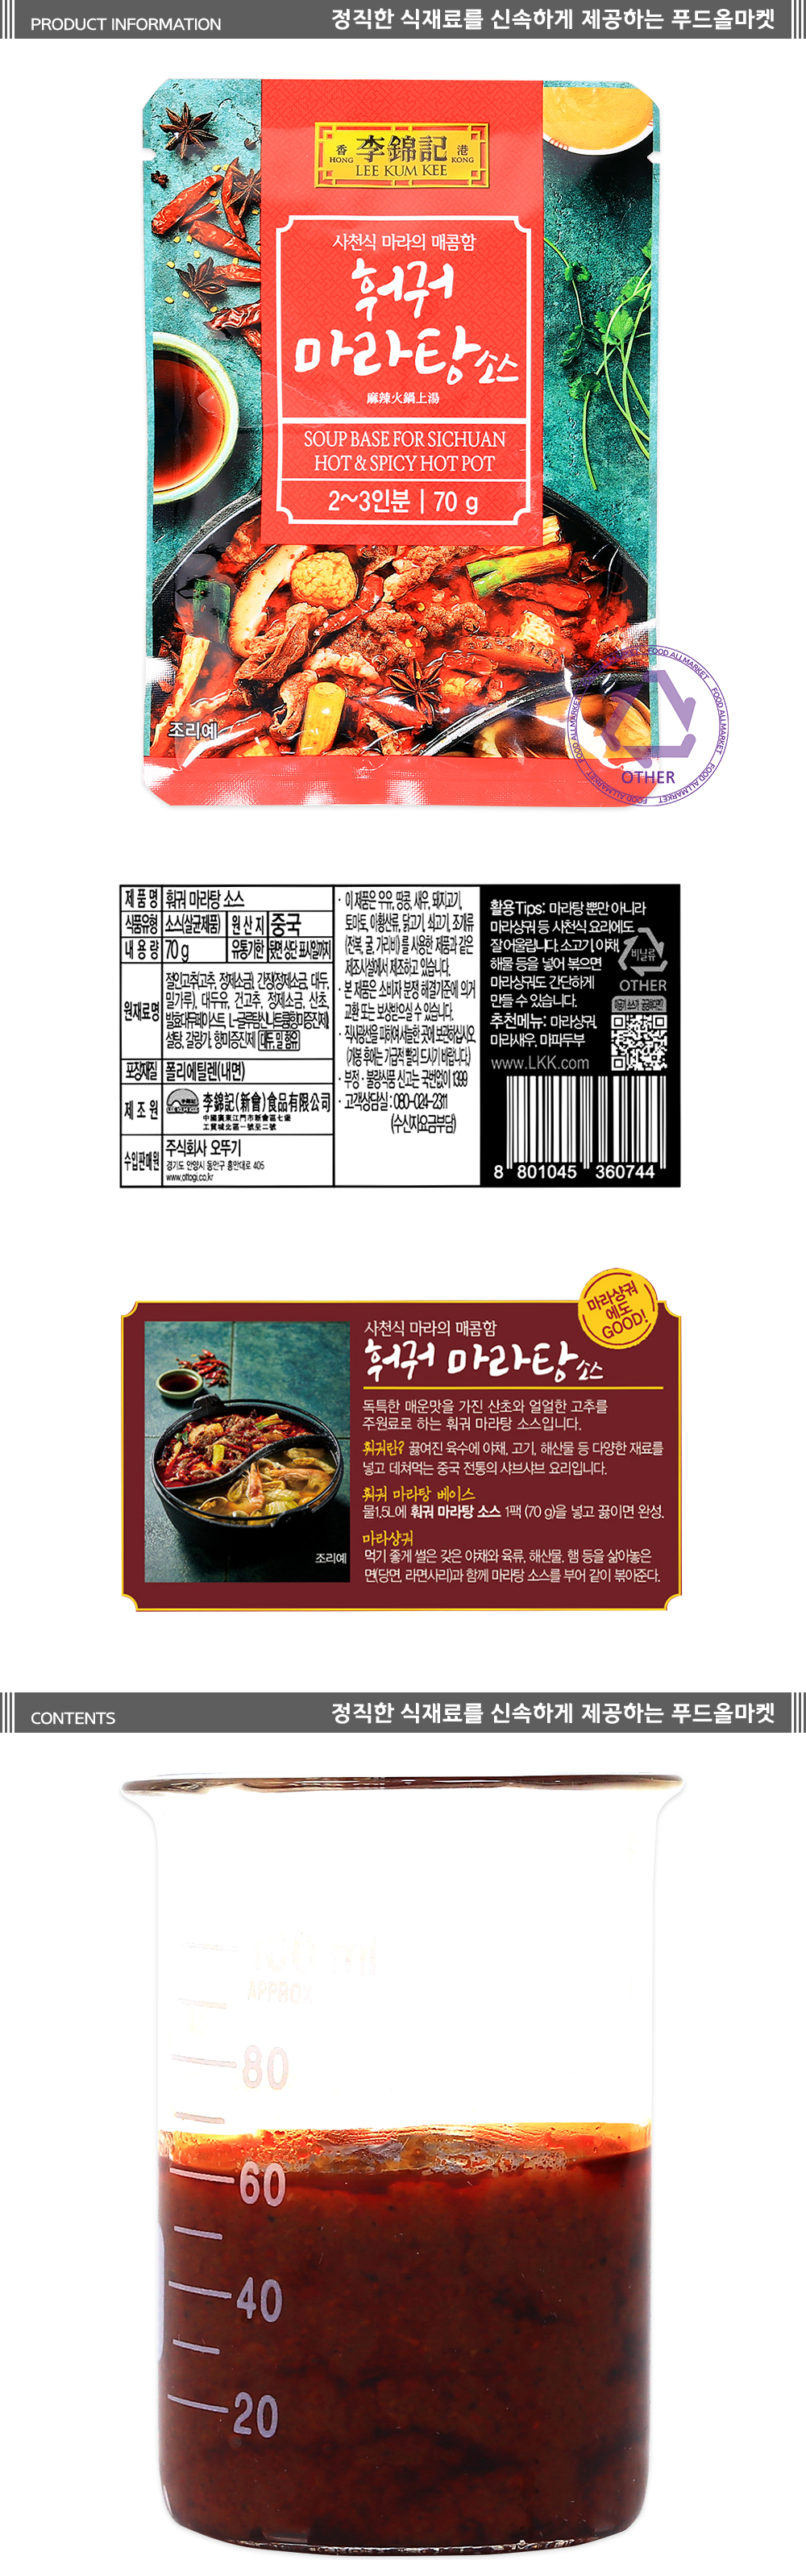 韓國食品-[李錦記] 麻辣火鍋湯底醬包 70g